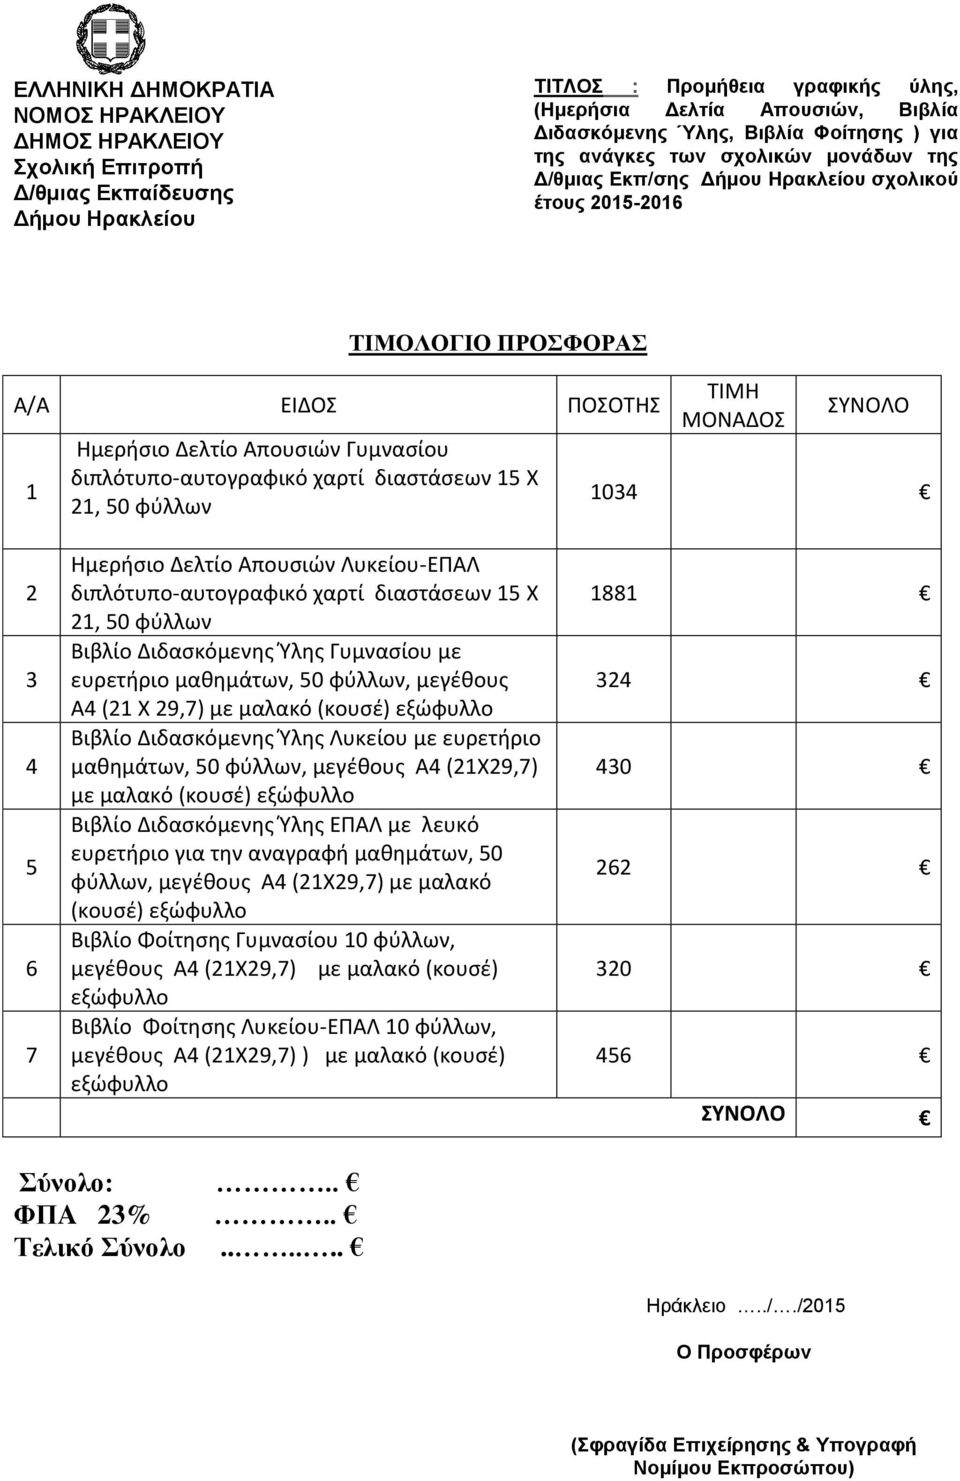 ΕΠΑΛ με λευκό ευρετήριο για την αναγραφή μαθημάτων, 50 φύλλων, μεγέθους Α4 (21Χ29,7) με μαλακό (κουσέ) Βιβλίο Φοίτησης Γυμνασίου 10 φύλλων, μεγέθους Α4 (21Χ29,7) με μαλακό (κουσέ) Βιβλίο Φοίτησης